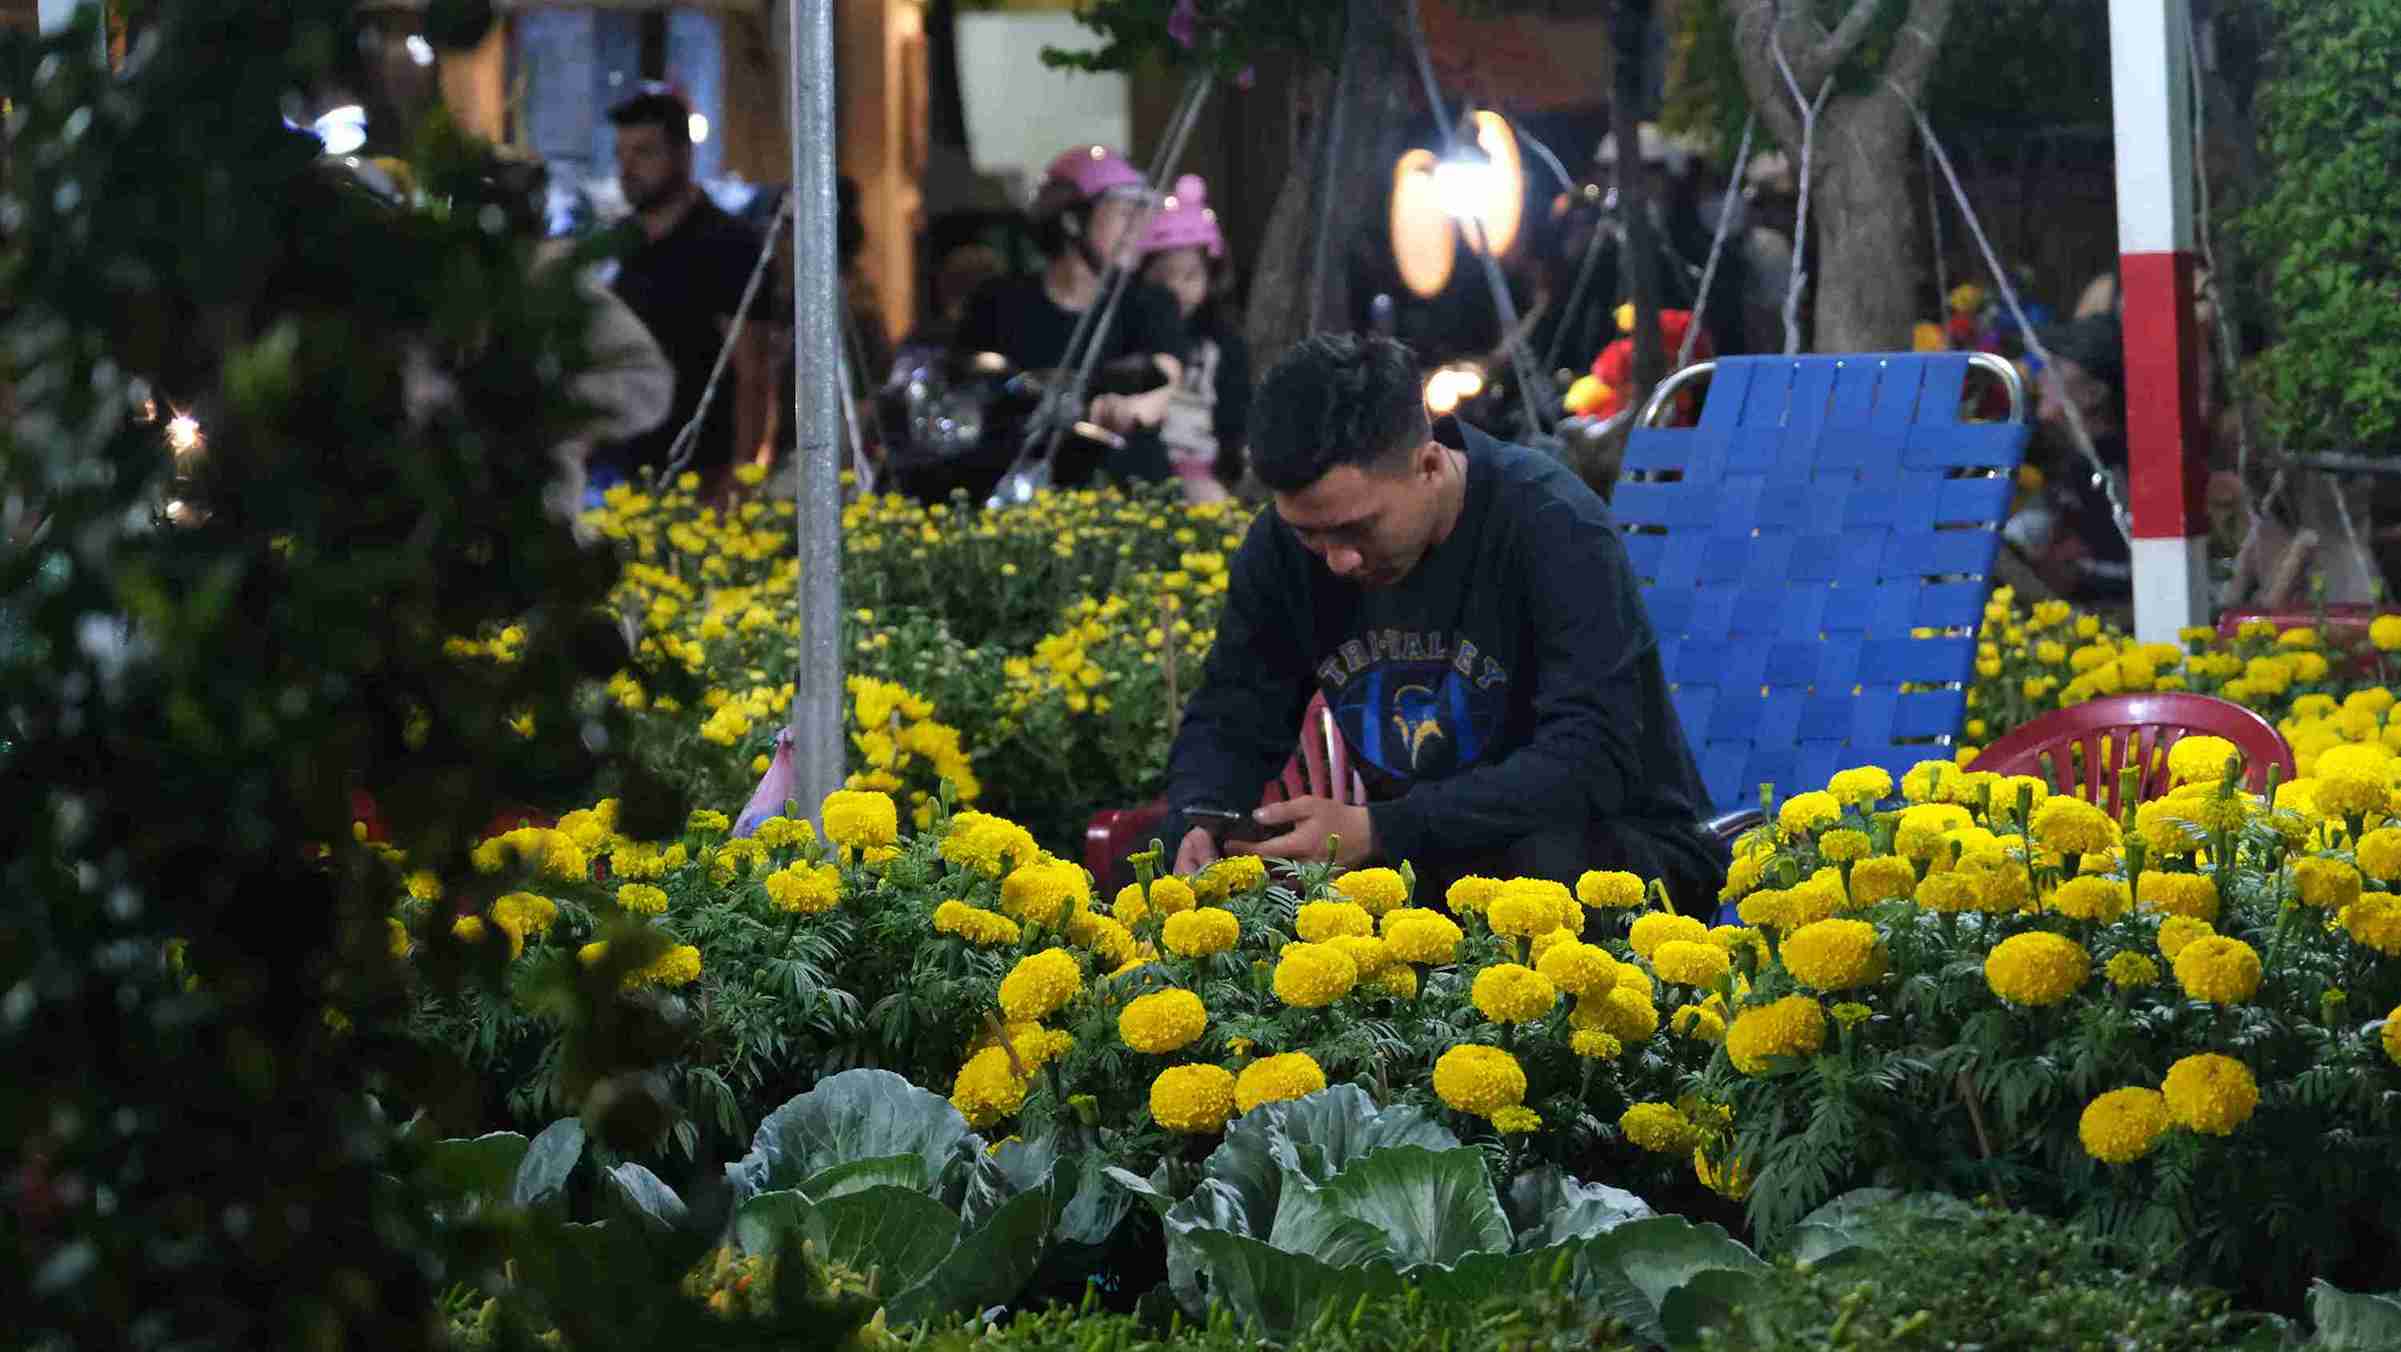 Việc bán hàng online giúp nhà vườn đỡ vất vả khi không phải ngồi chờ khách mua, giảm được chi phí thuê mặt bằng so với cách bán hàng truyền thống. Ảnh: Phong Linh.